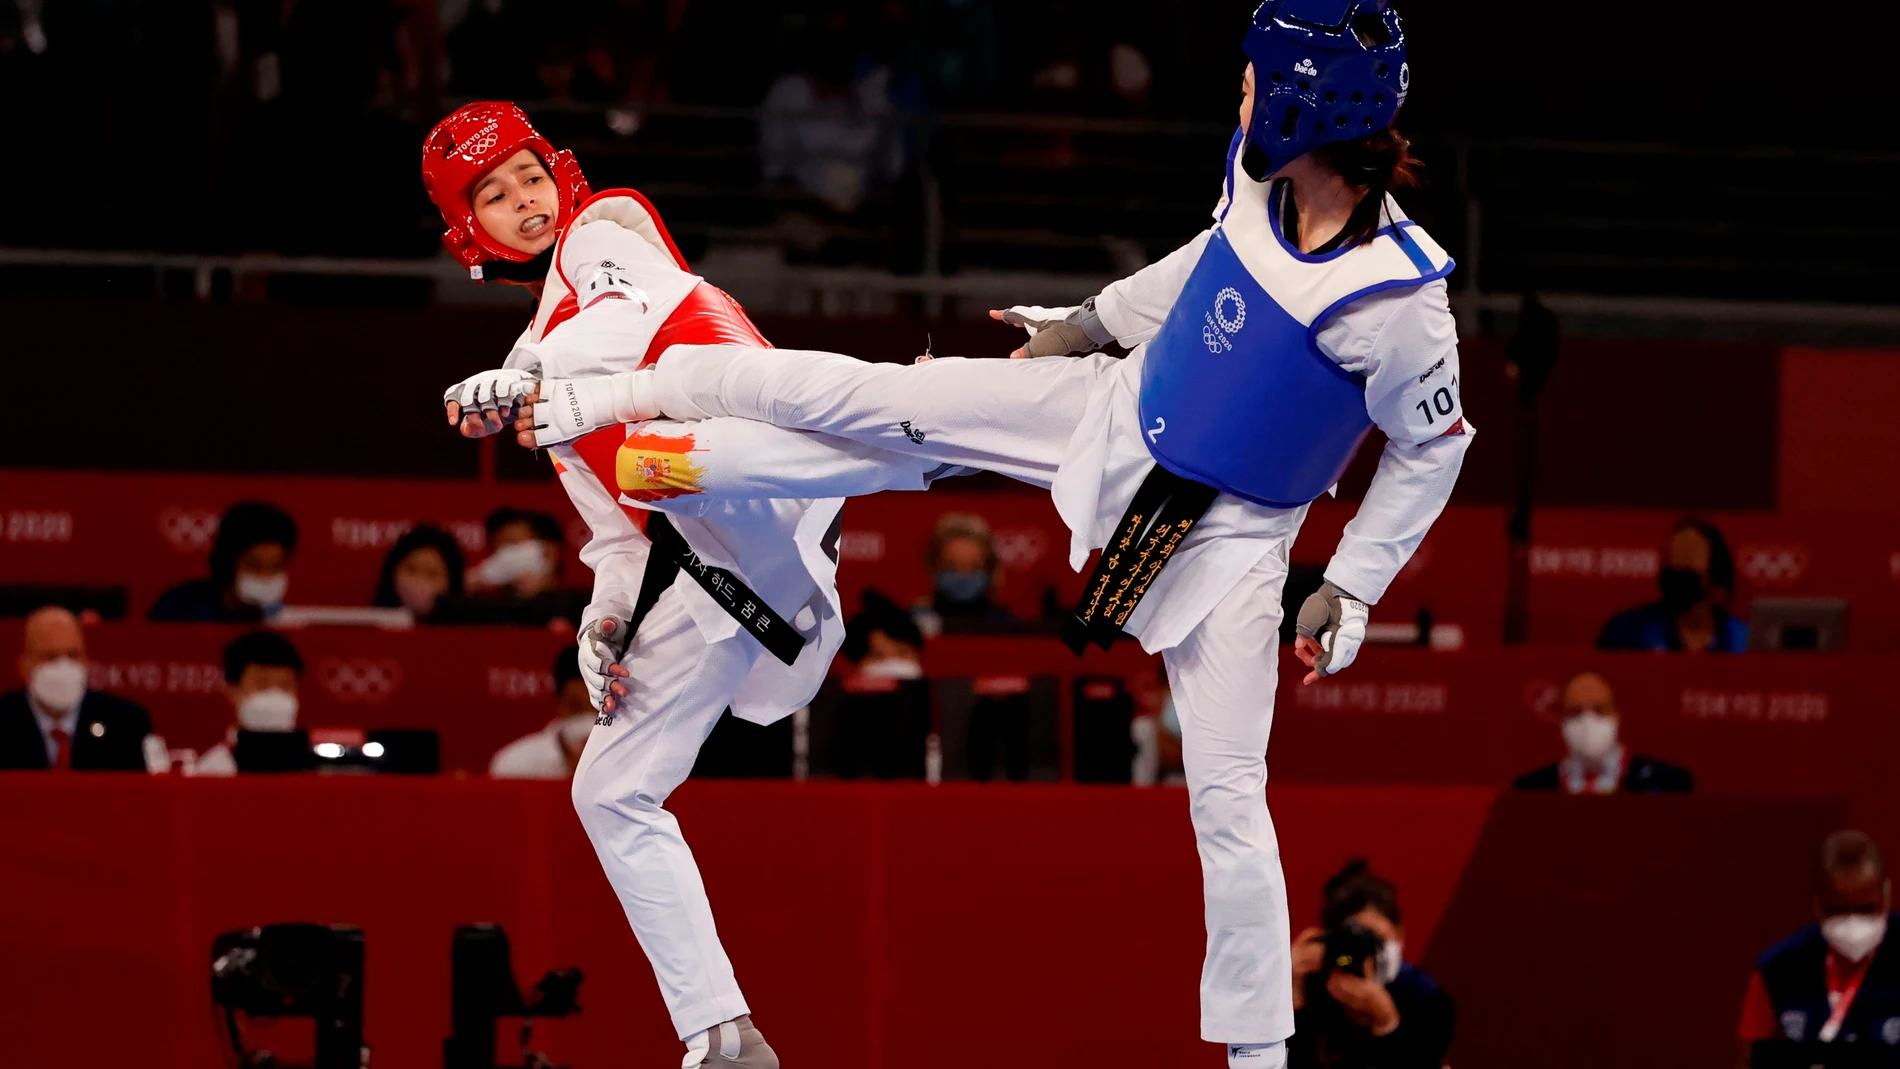 Adriana Cerezo consigue la plata en la final de taekwondo -49 kilos, primera medalla de España en los Juegos